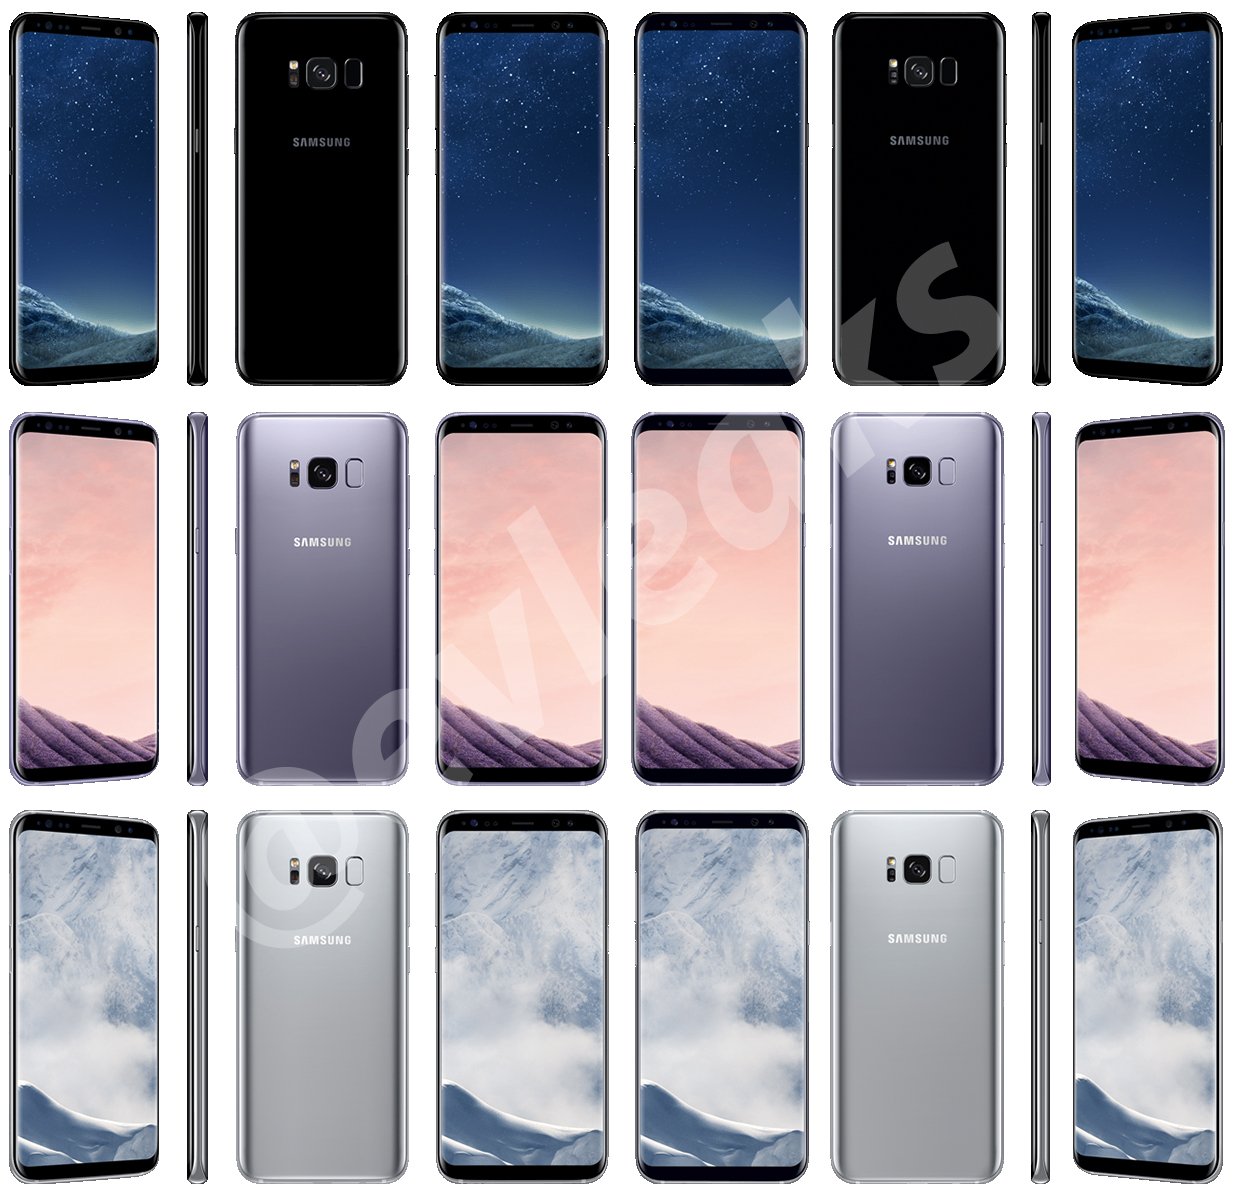 kolory obrazu w Samsungu Galaxy S8